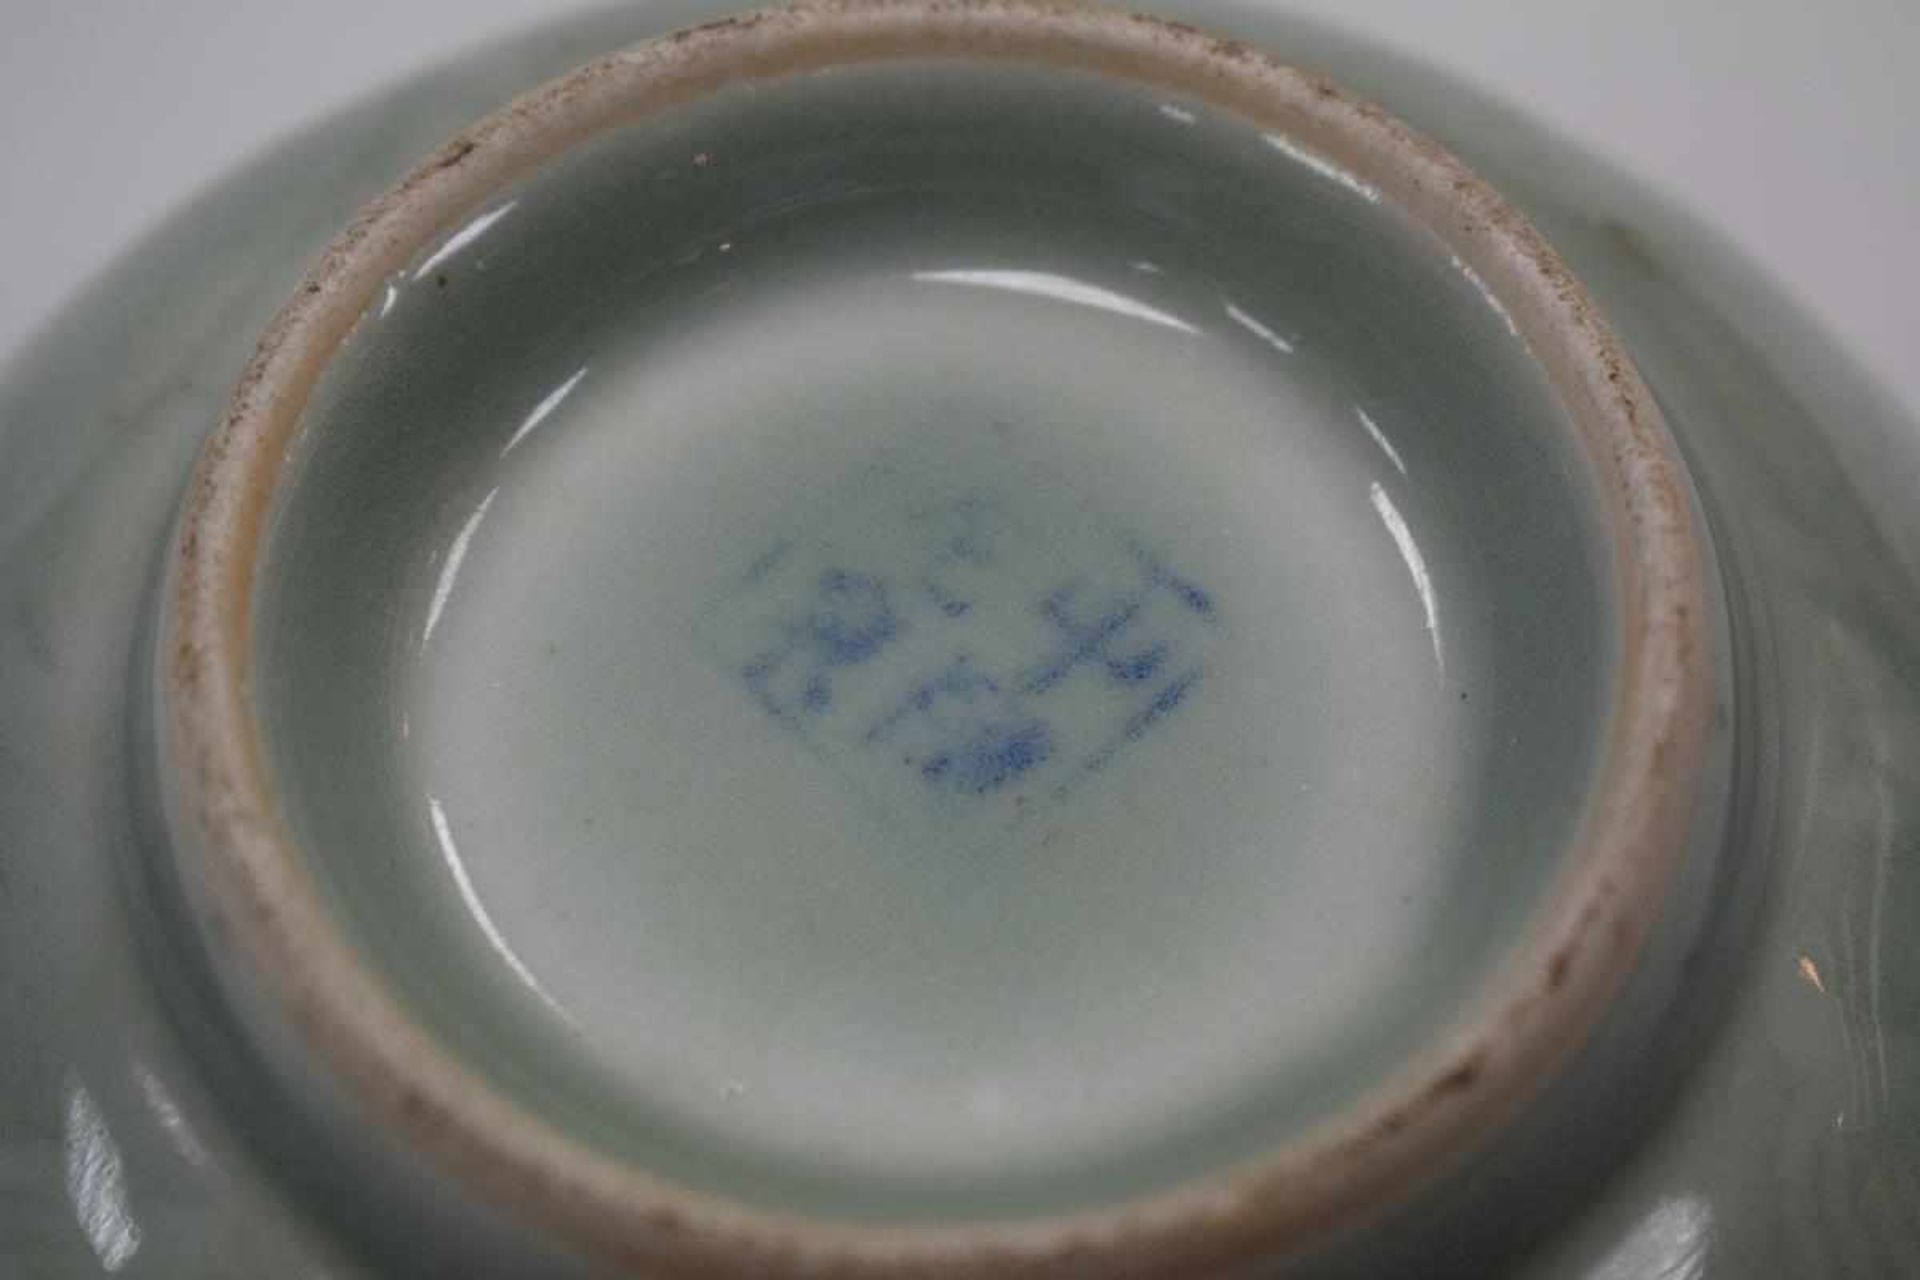 Chinesische Keramikschale mit SeladonglasurSchale Keramik China, jadegrüne Seladonglasur mit Fischen - Bild 3 aus 3